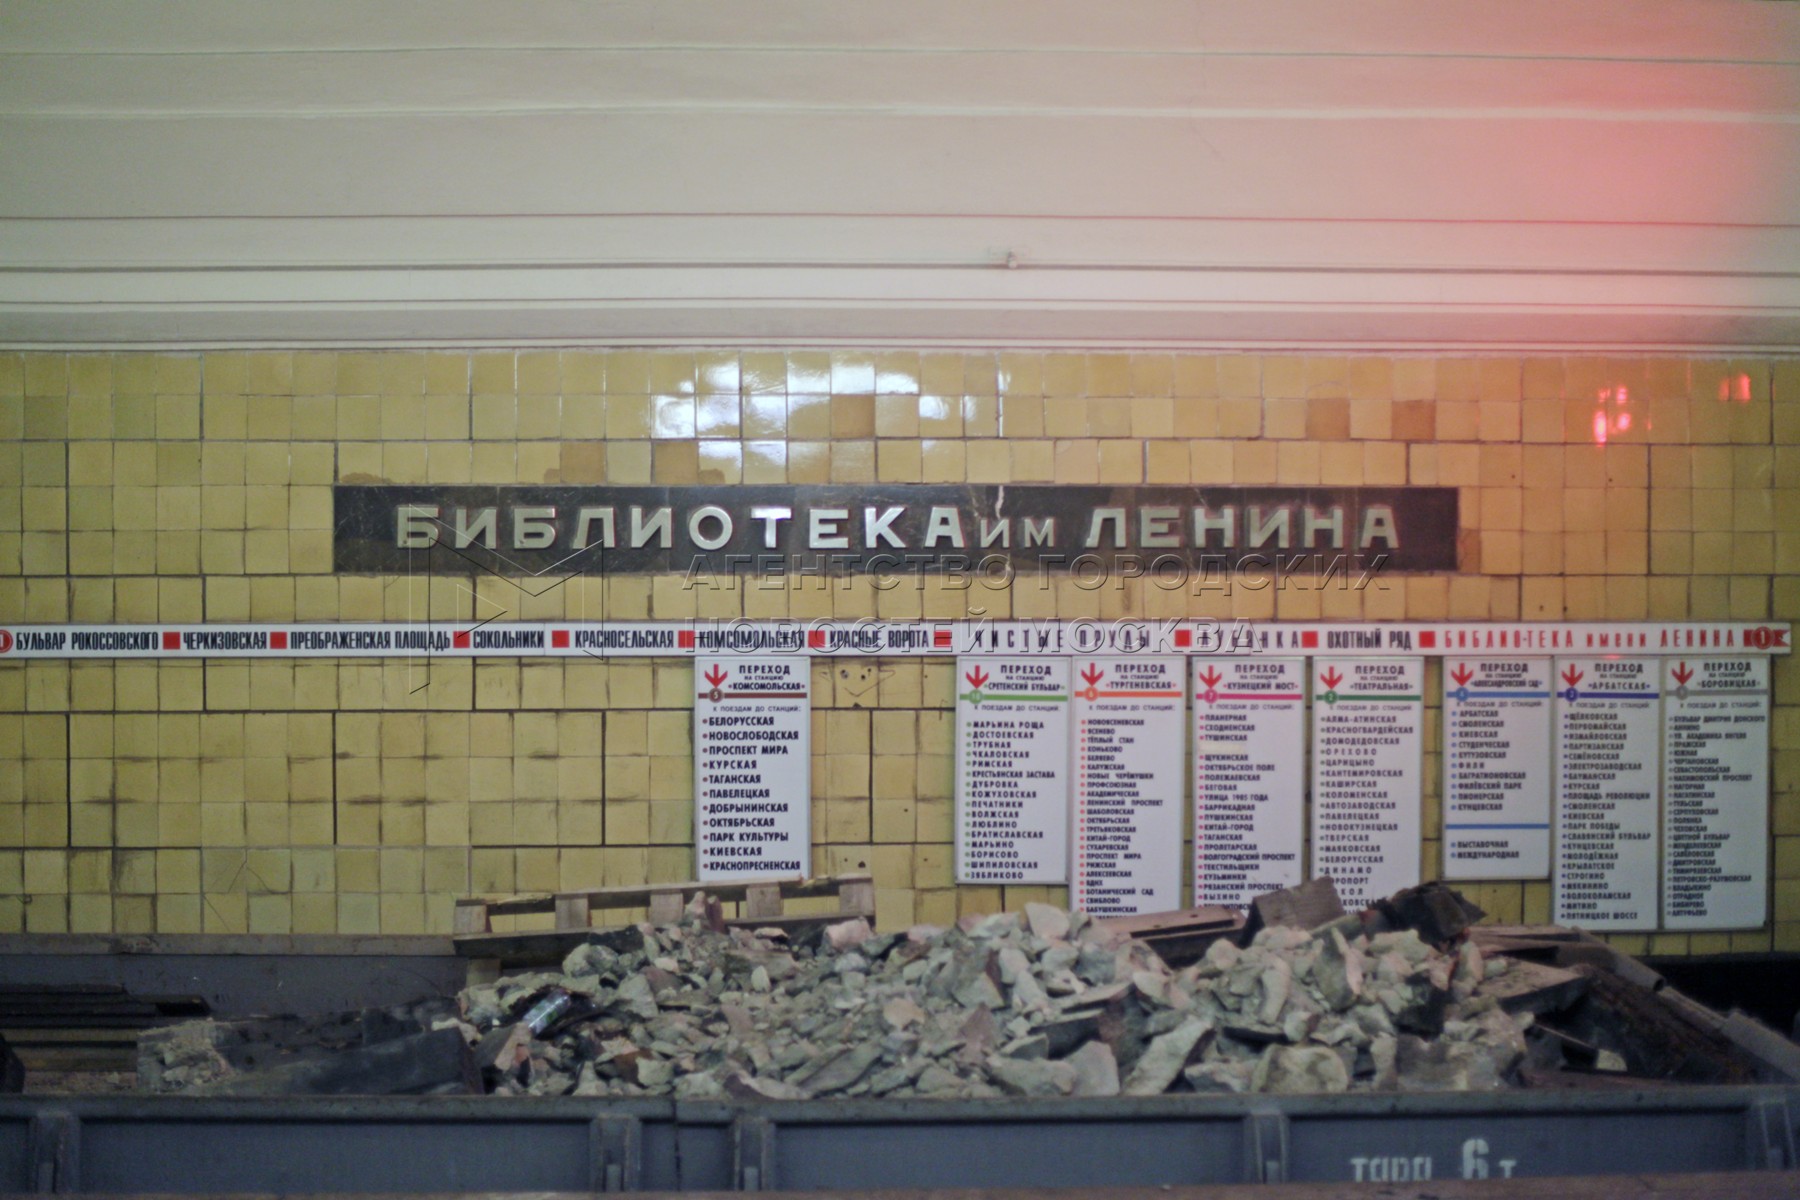 метро библиотека имени ленина выходы